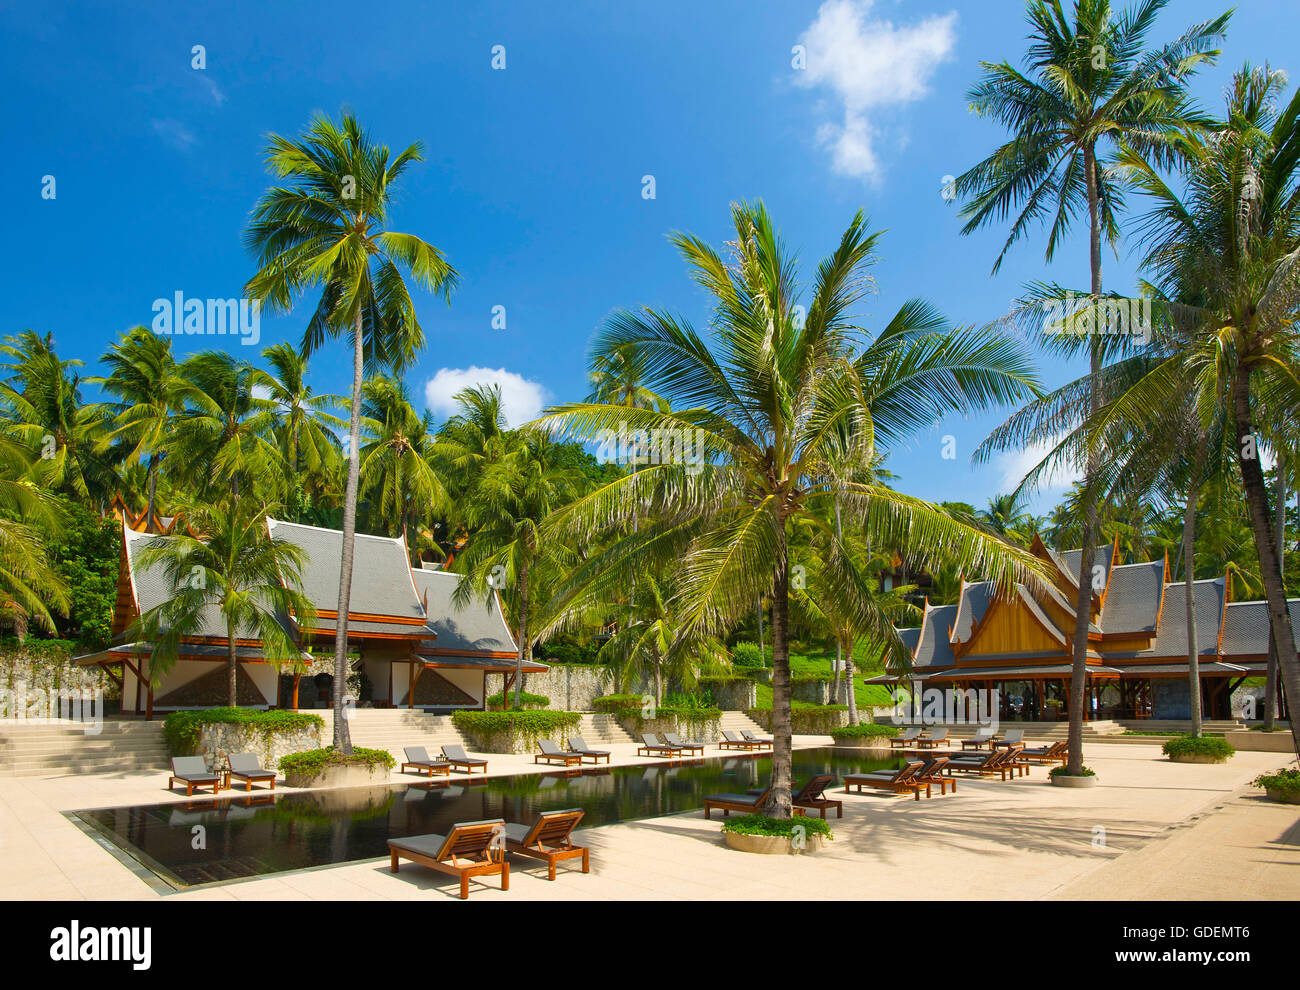 L'Amanpuri Resort, l'île de Phuket, Thaïlande Banque D'Images